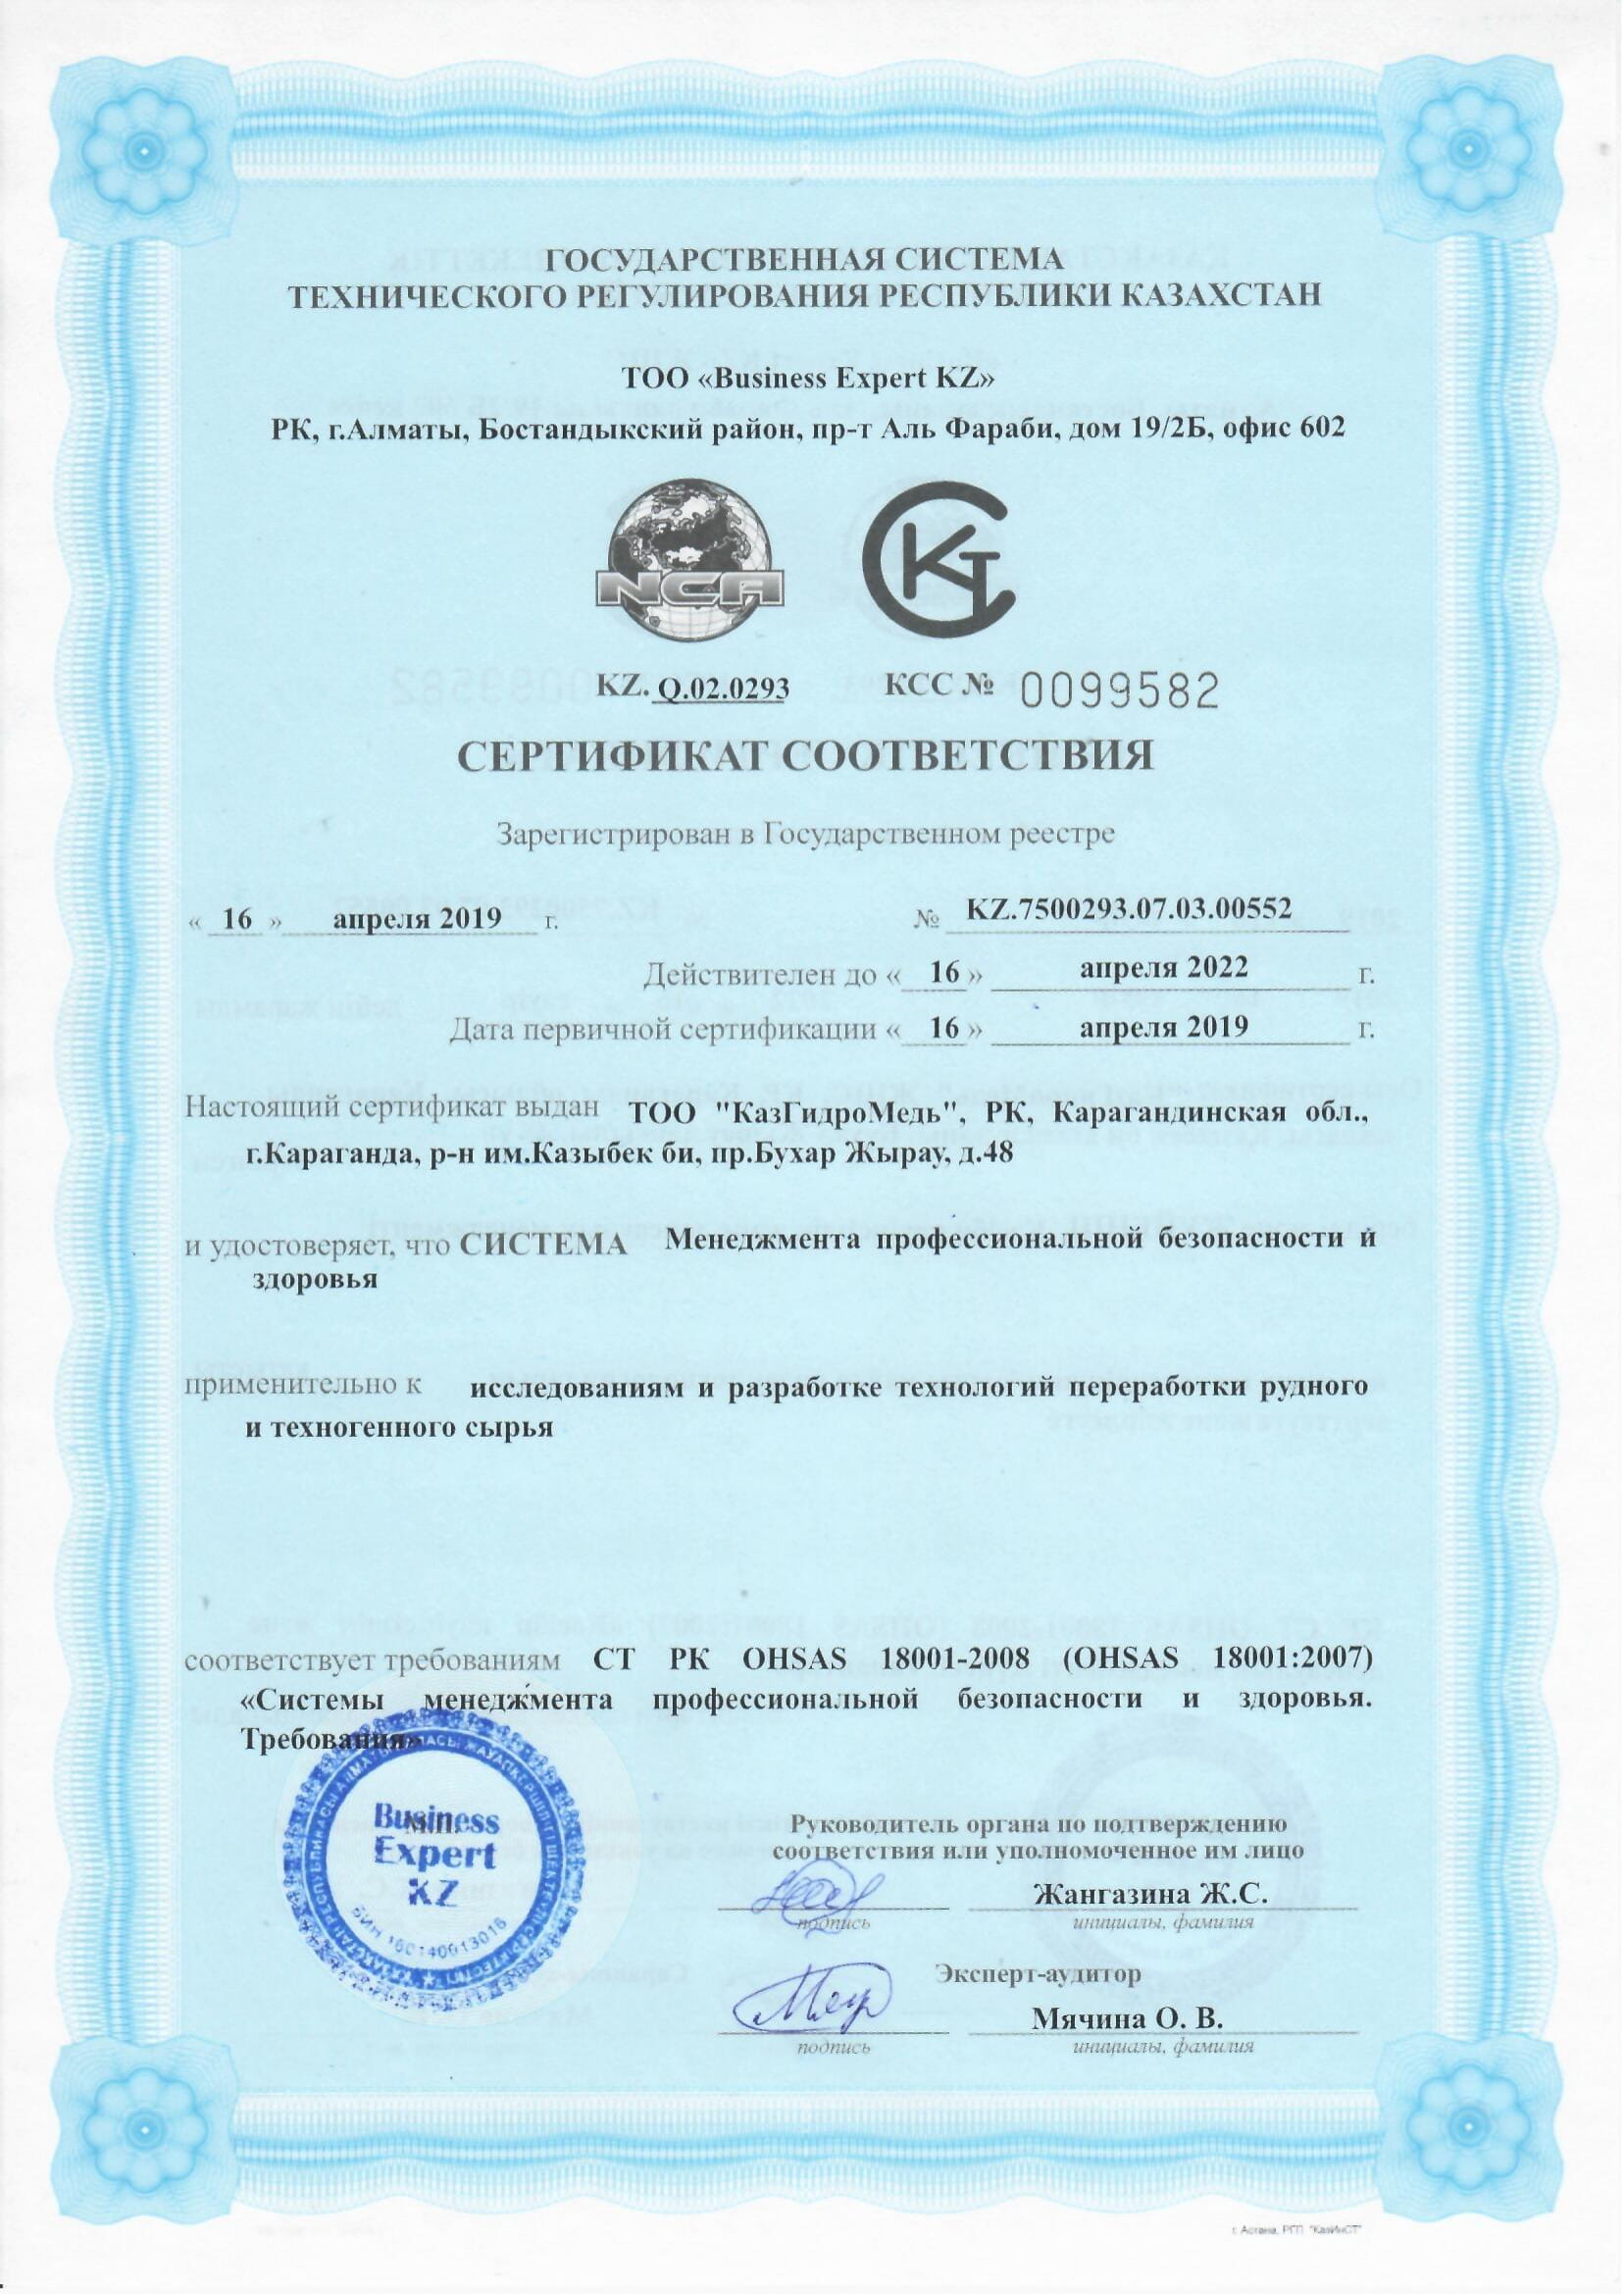 3 - Сертификаты соответствия 2019-5